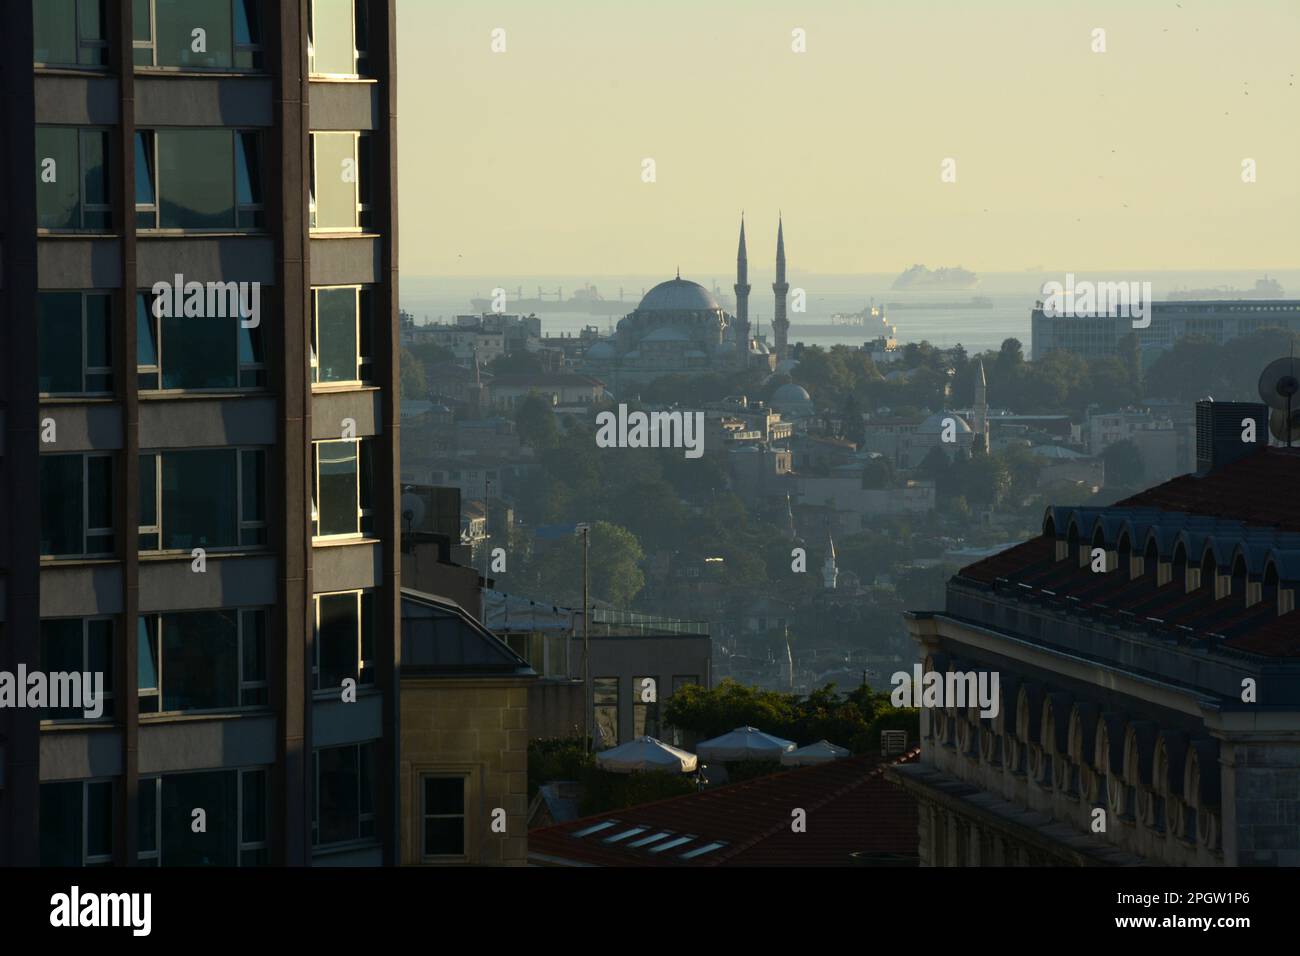 En regardant vers Sultanahmet et les navires sur la mer de Marmara de Beyoglu sur le côté européen d'Istanbul au coucher du soleil, Turquie / Turkiye. Banque D'Images